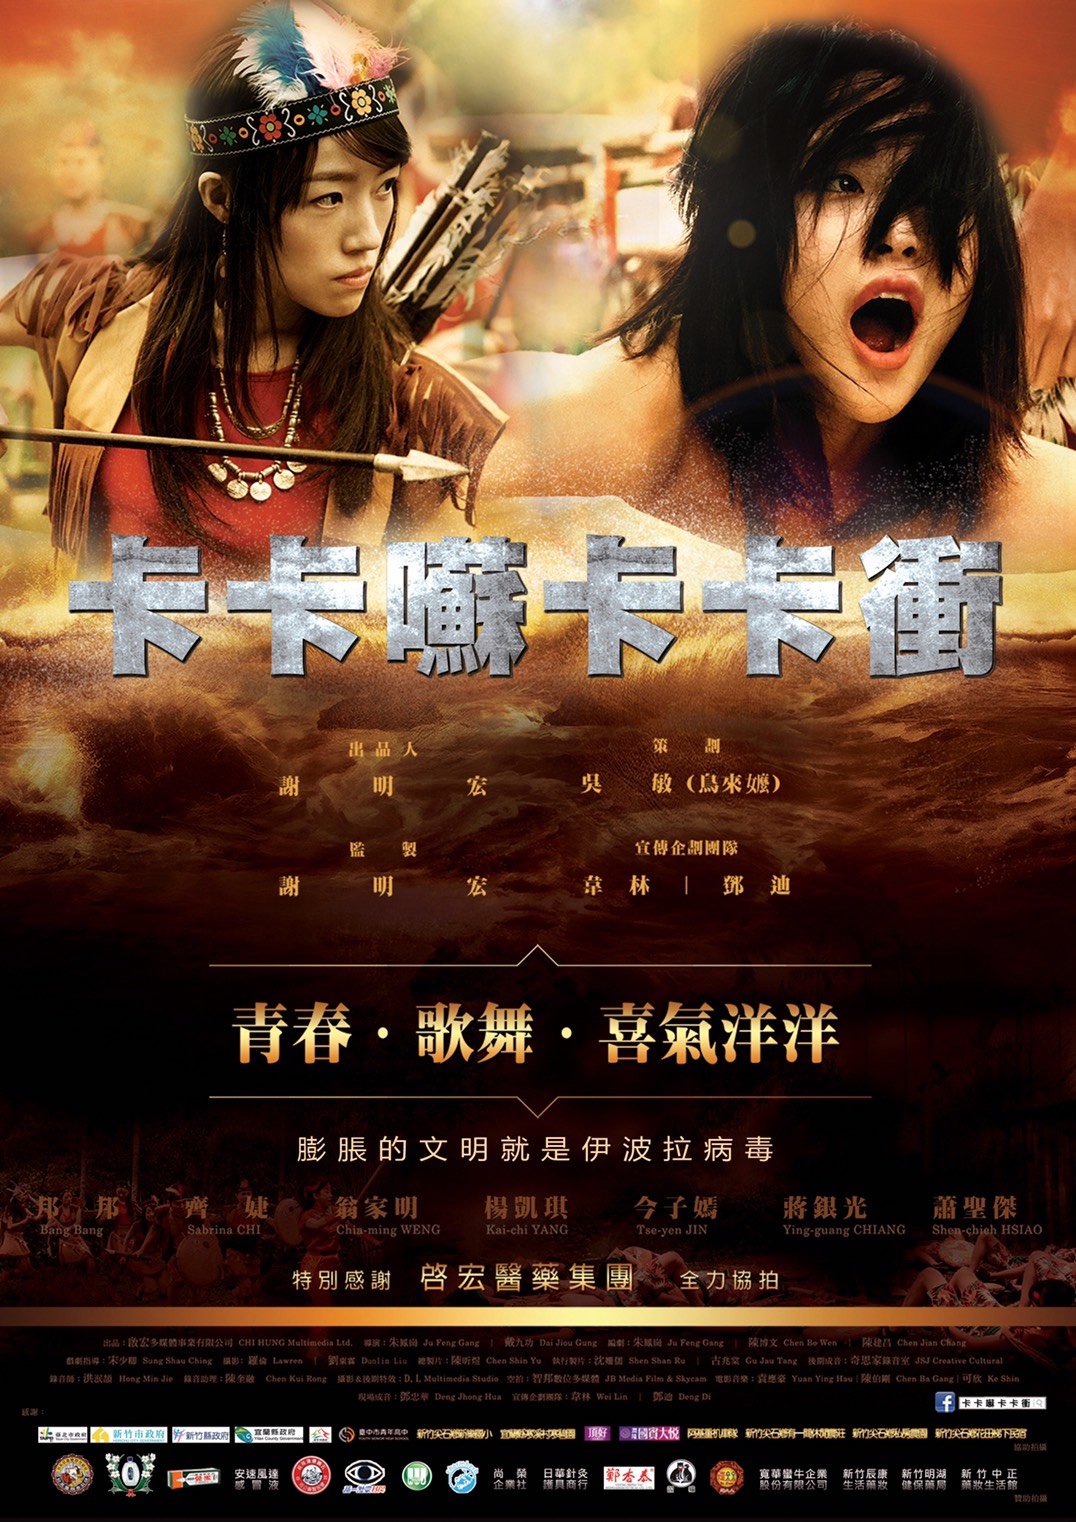 《卡卡苏卡卡冲》取材自台湾在地原住民族“卡那卡那富族”，汉人女孩与原住民男孩恋爱之真实故事。